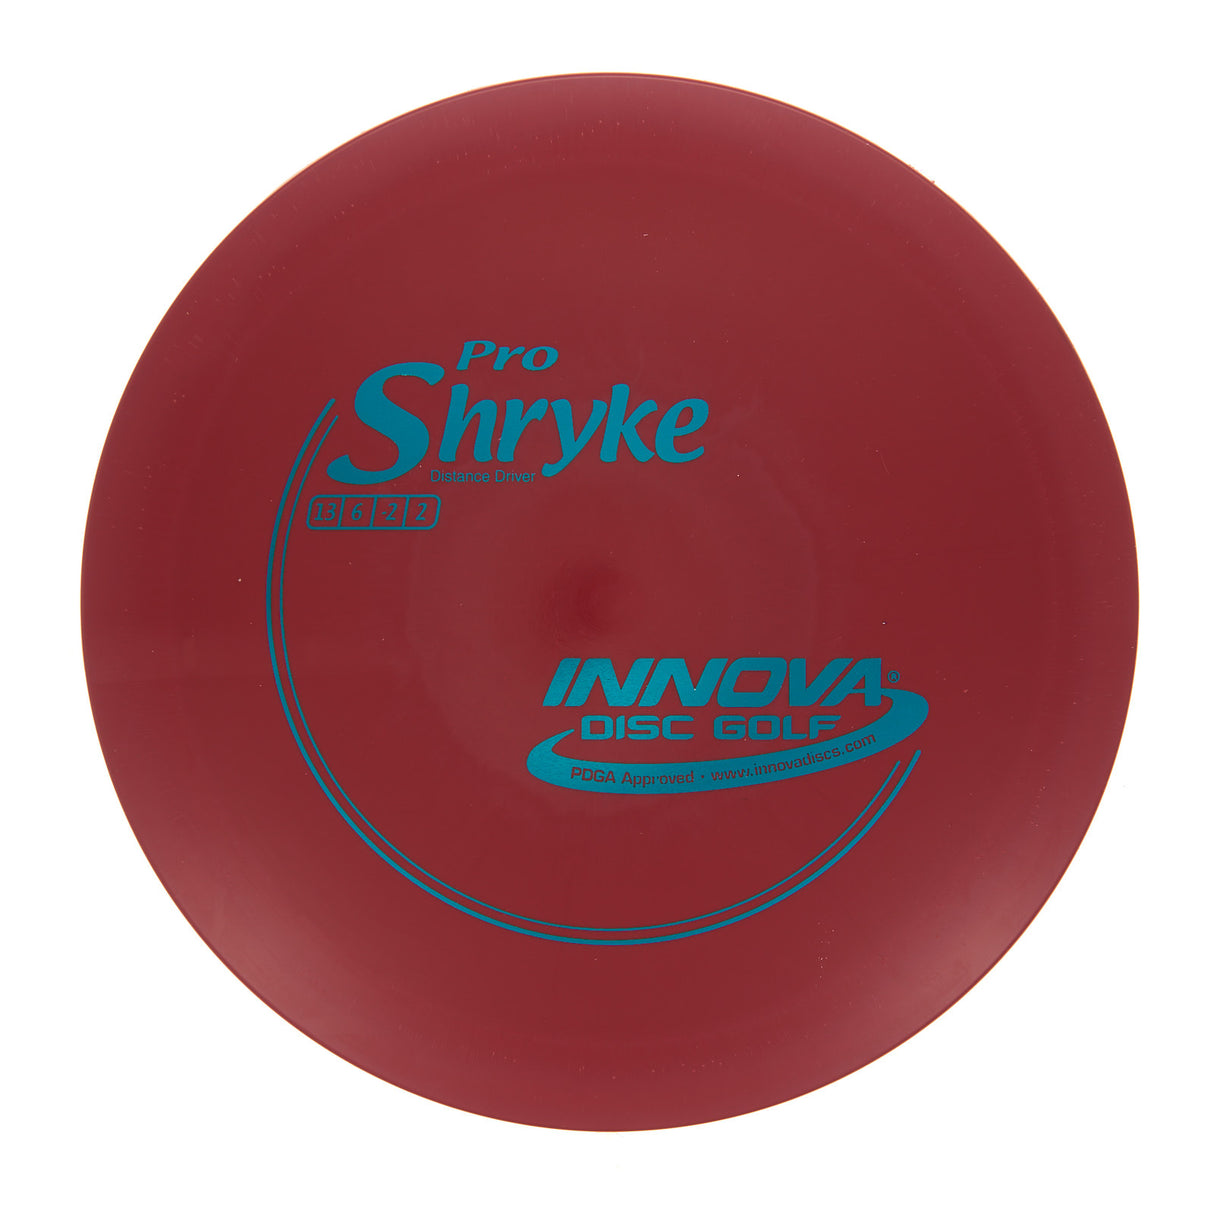 Innova Shryke - Pro 167g | Style 0001